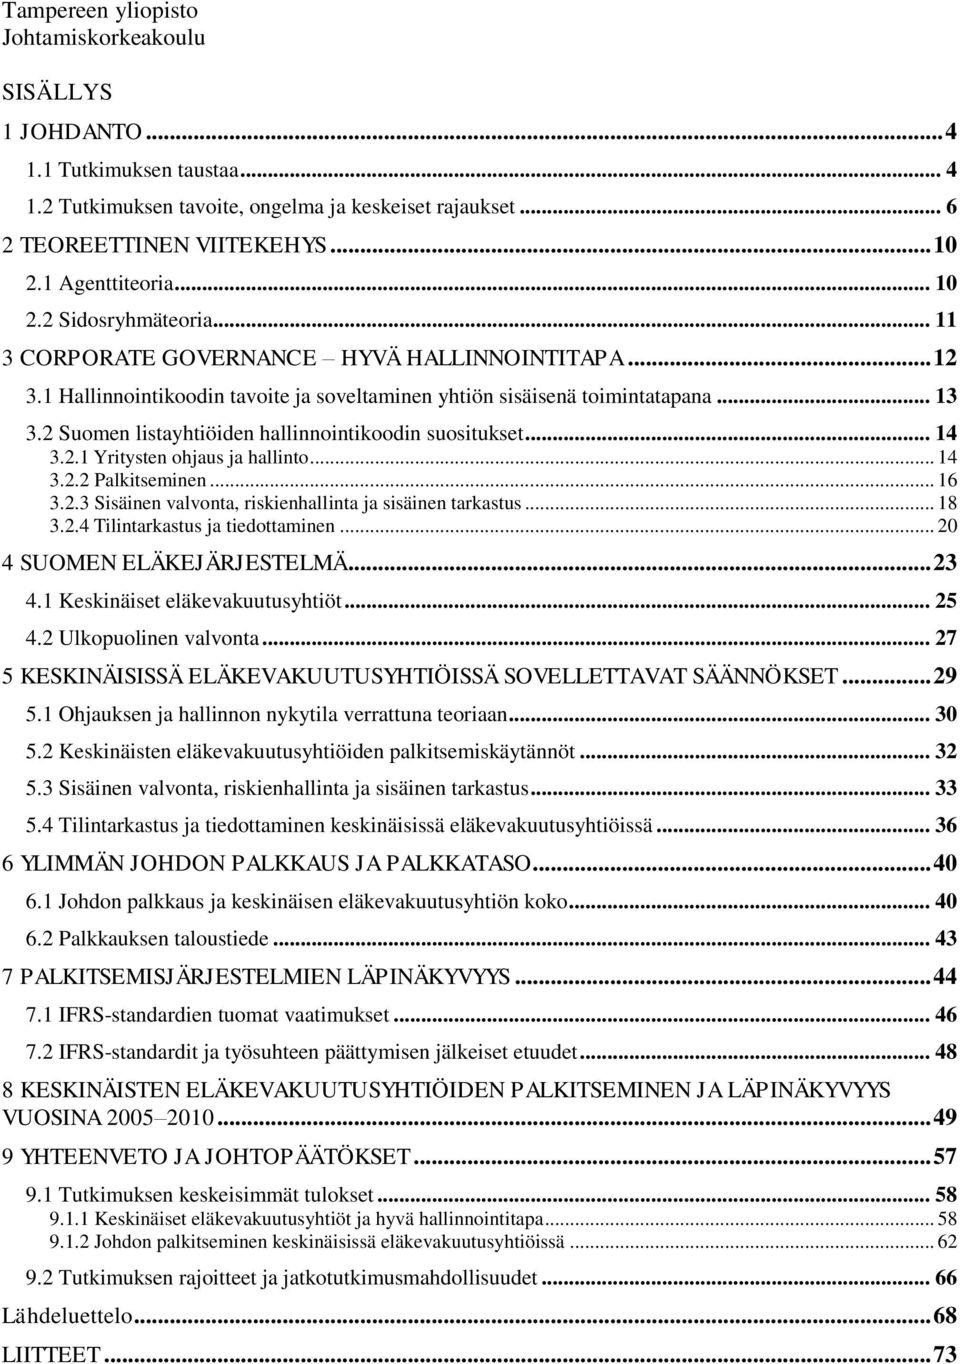 2 Suomen listayhtiöiden hallinnointikoodin suositukset... 14 3.2.1 Yritysten ohjaus ja hallinto... 14 3.2.2 Palkitseminen... 16 3.2.3 Sisäinen valvonta, riskienhallinta ja sisäinen tarkastus... 18 3.